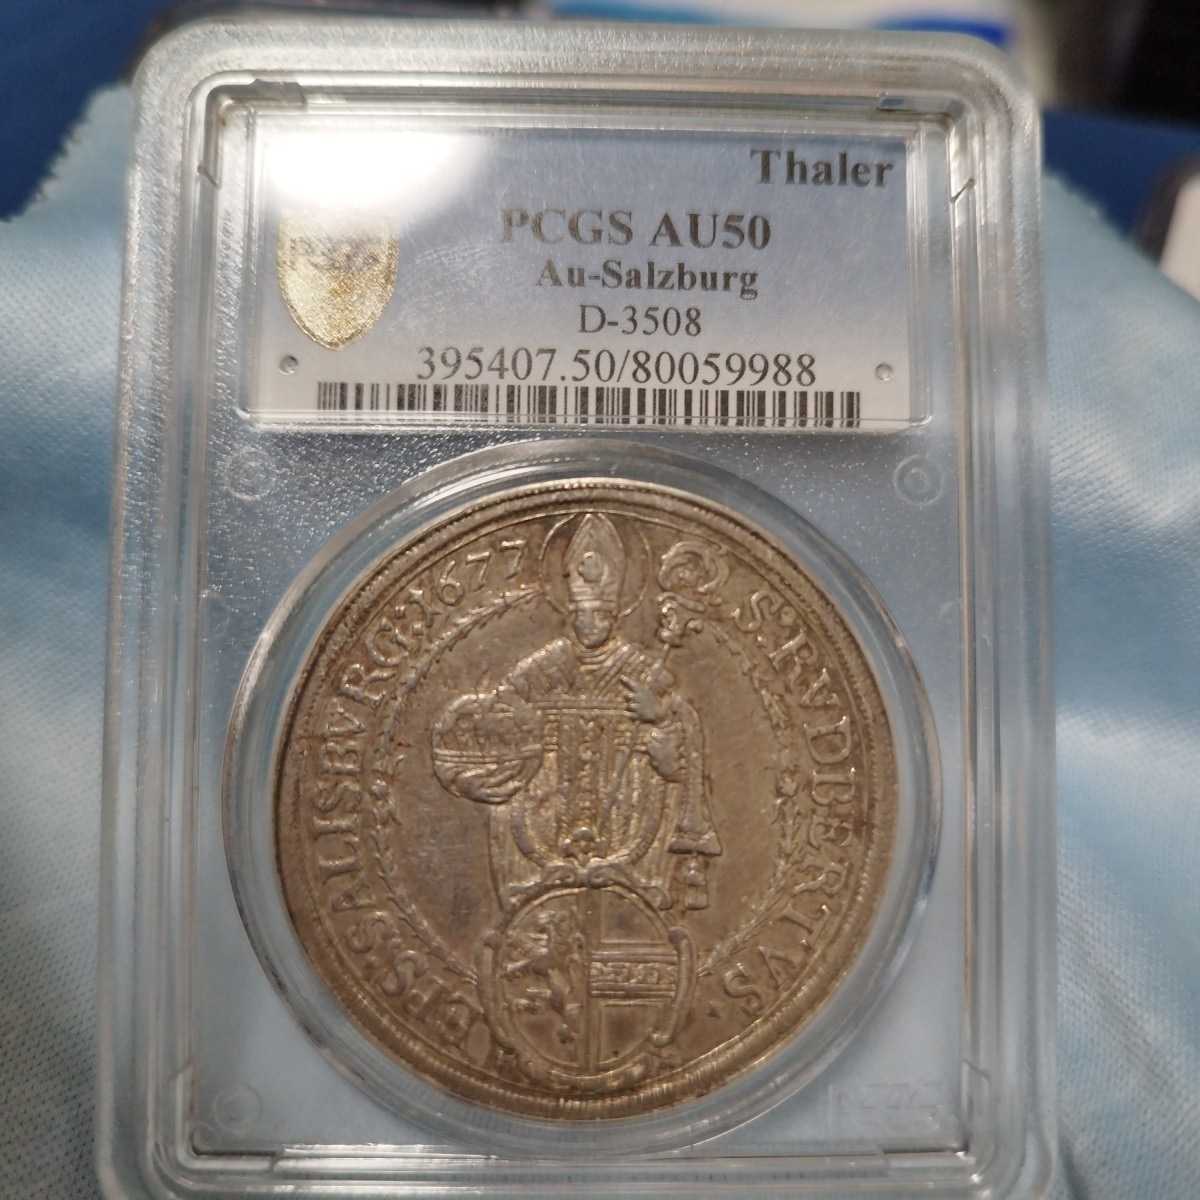 幅広type 1677年 神聖ローマ帝国 ザルツブルク ターラー銀貨 | www